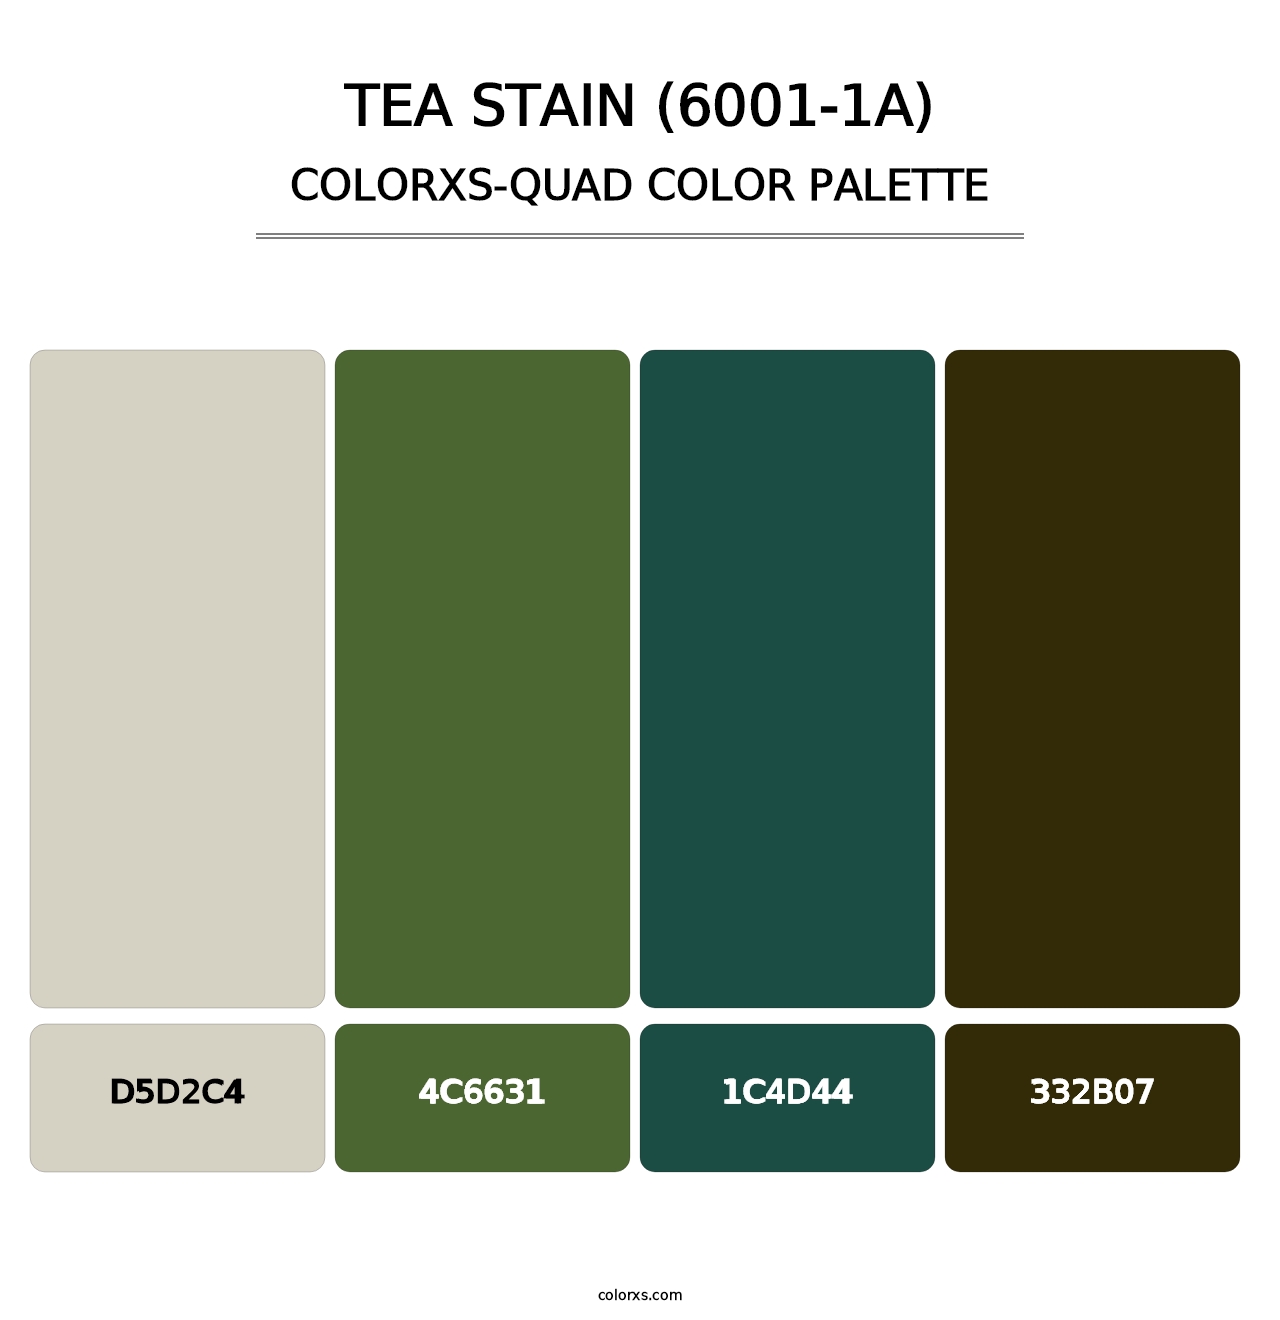 Tea Stain (6001-1A) - Colorxs Quad Palette